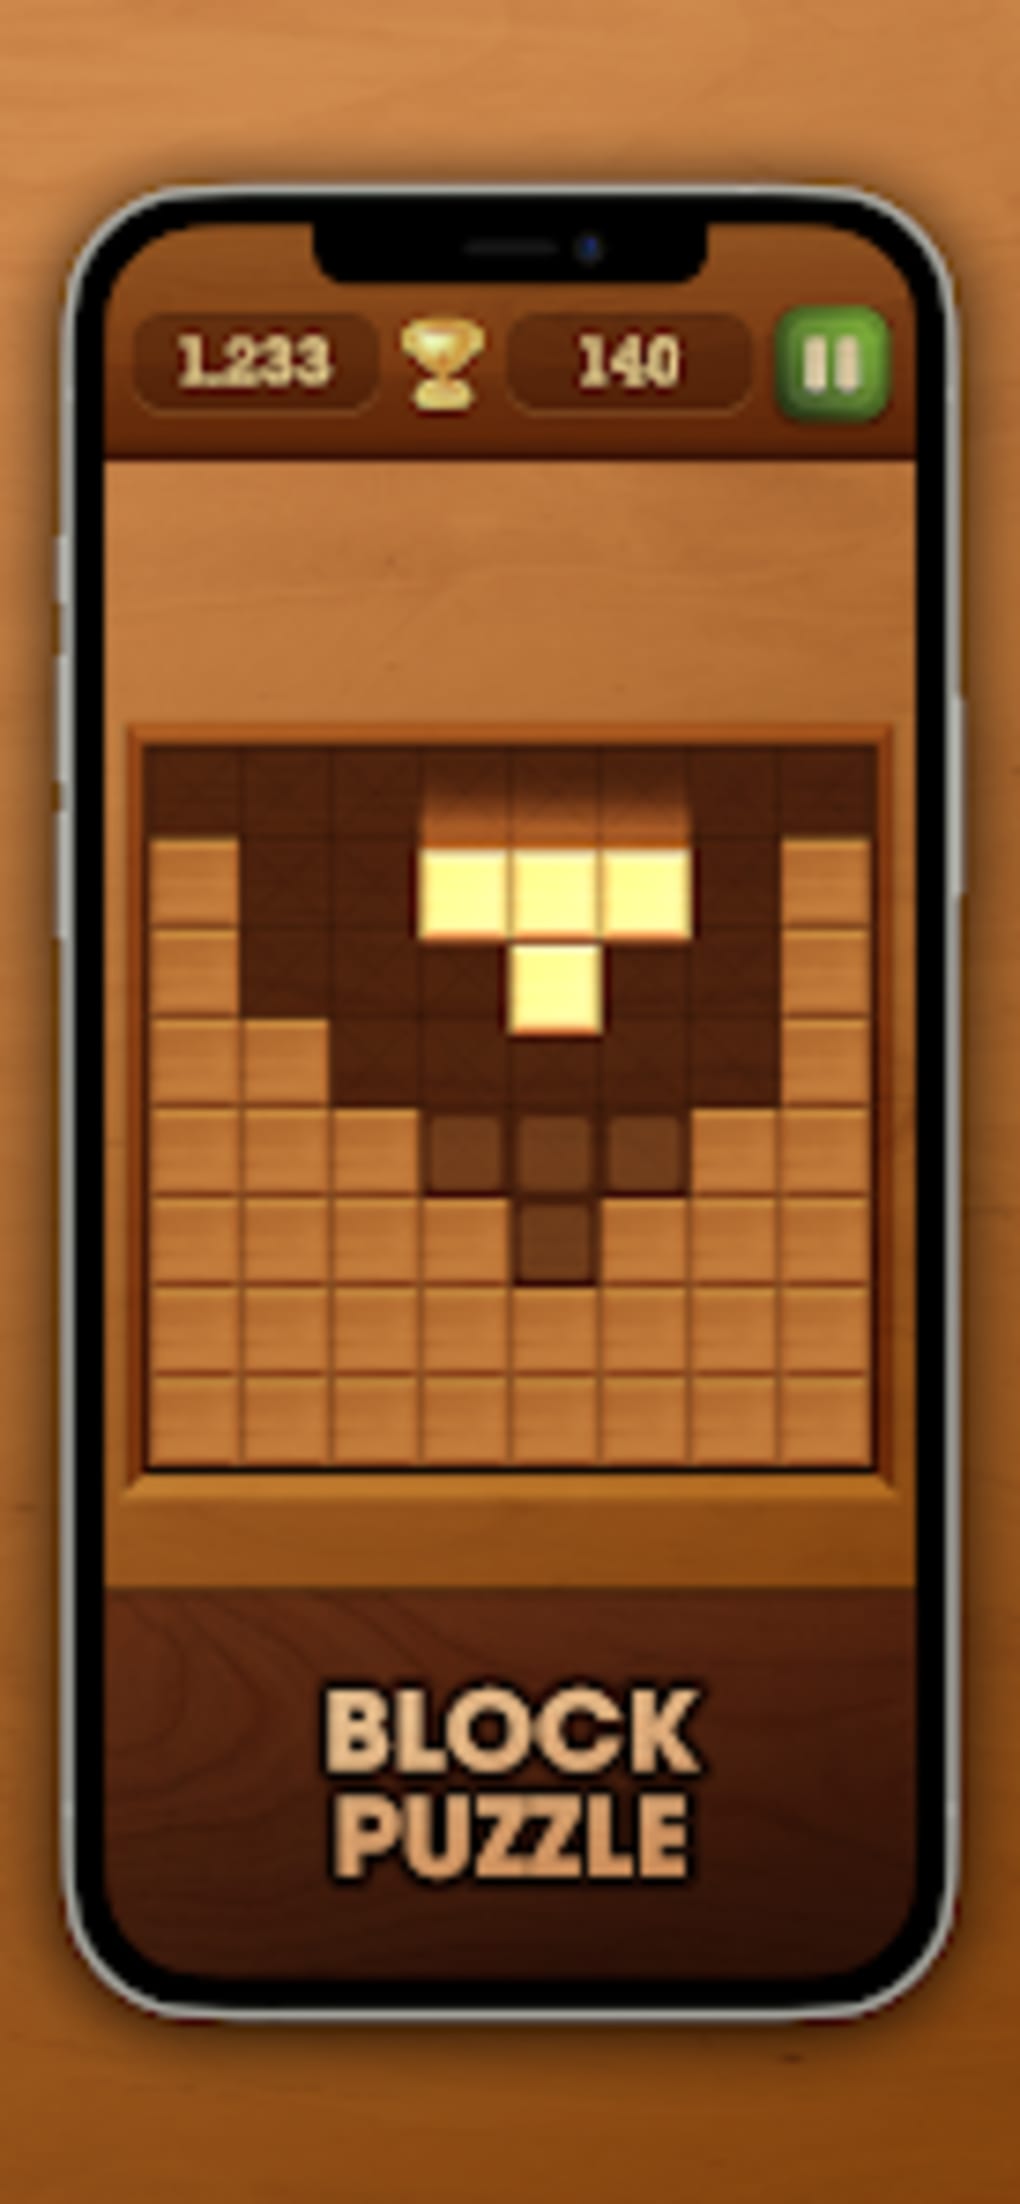 Wood Block Puzzle - Clássico Quebra-Cabeça Grátis - Download do